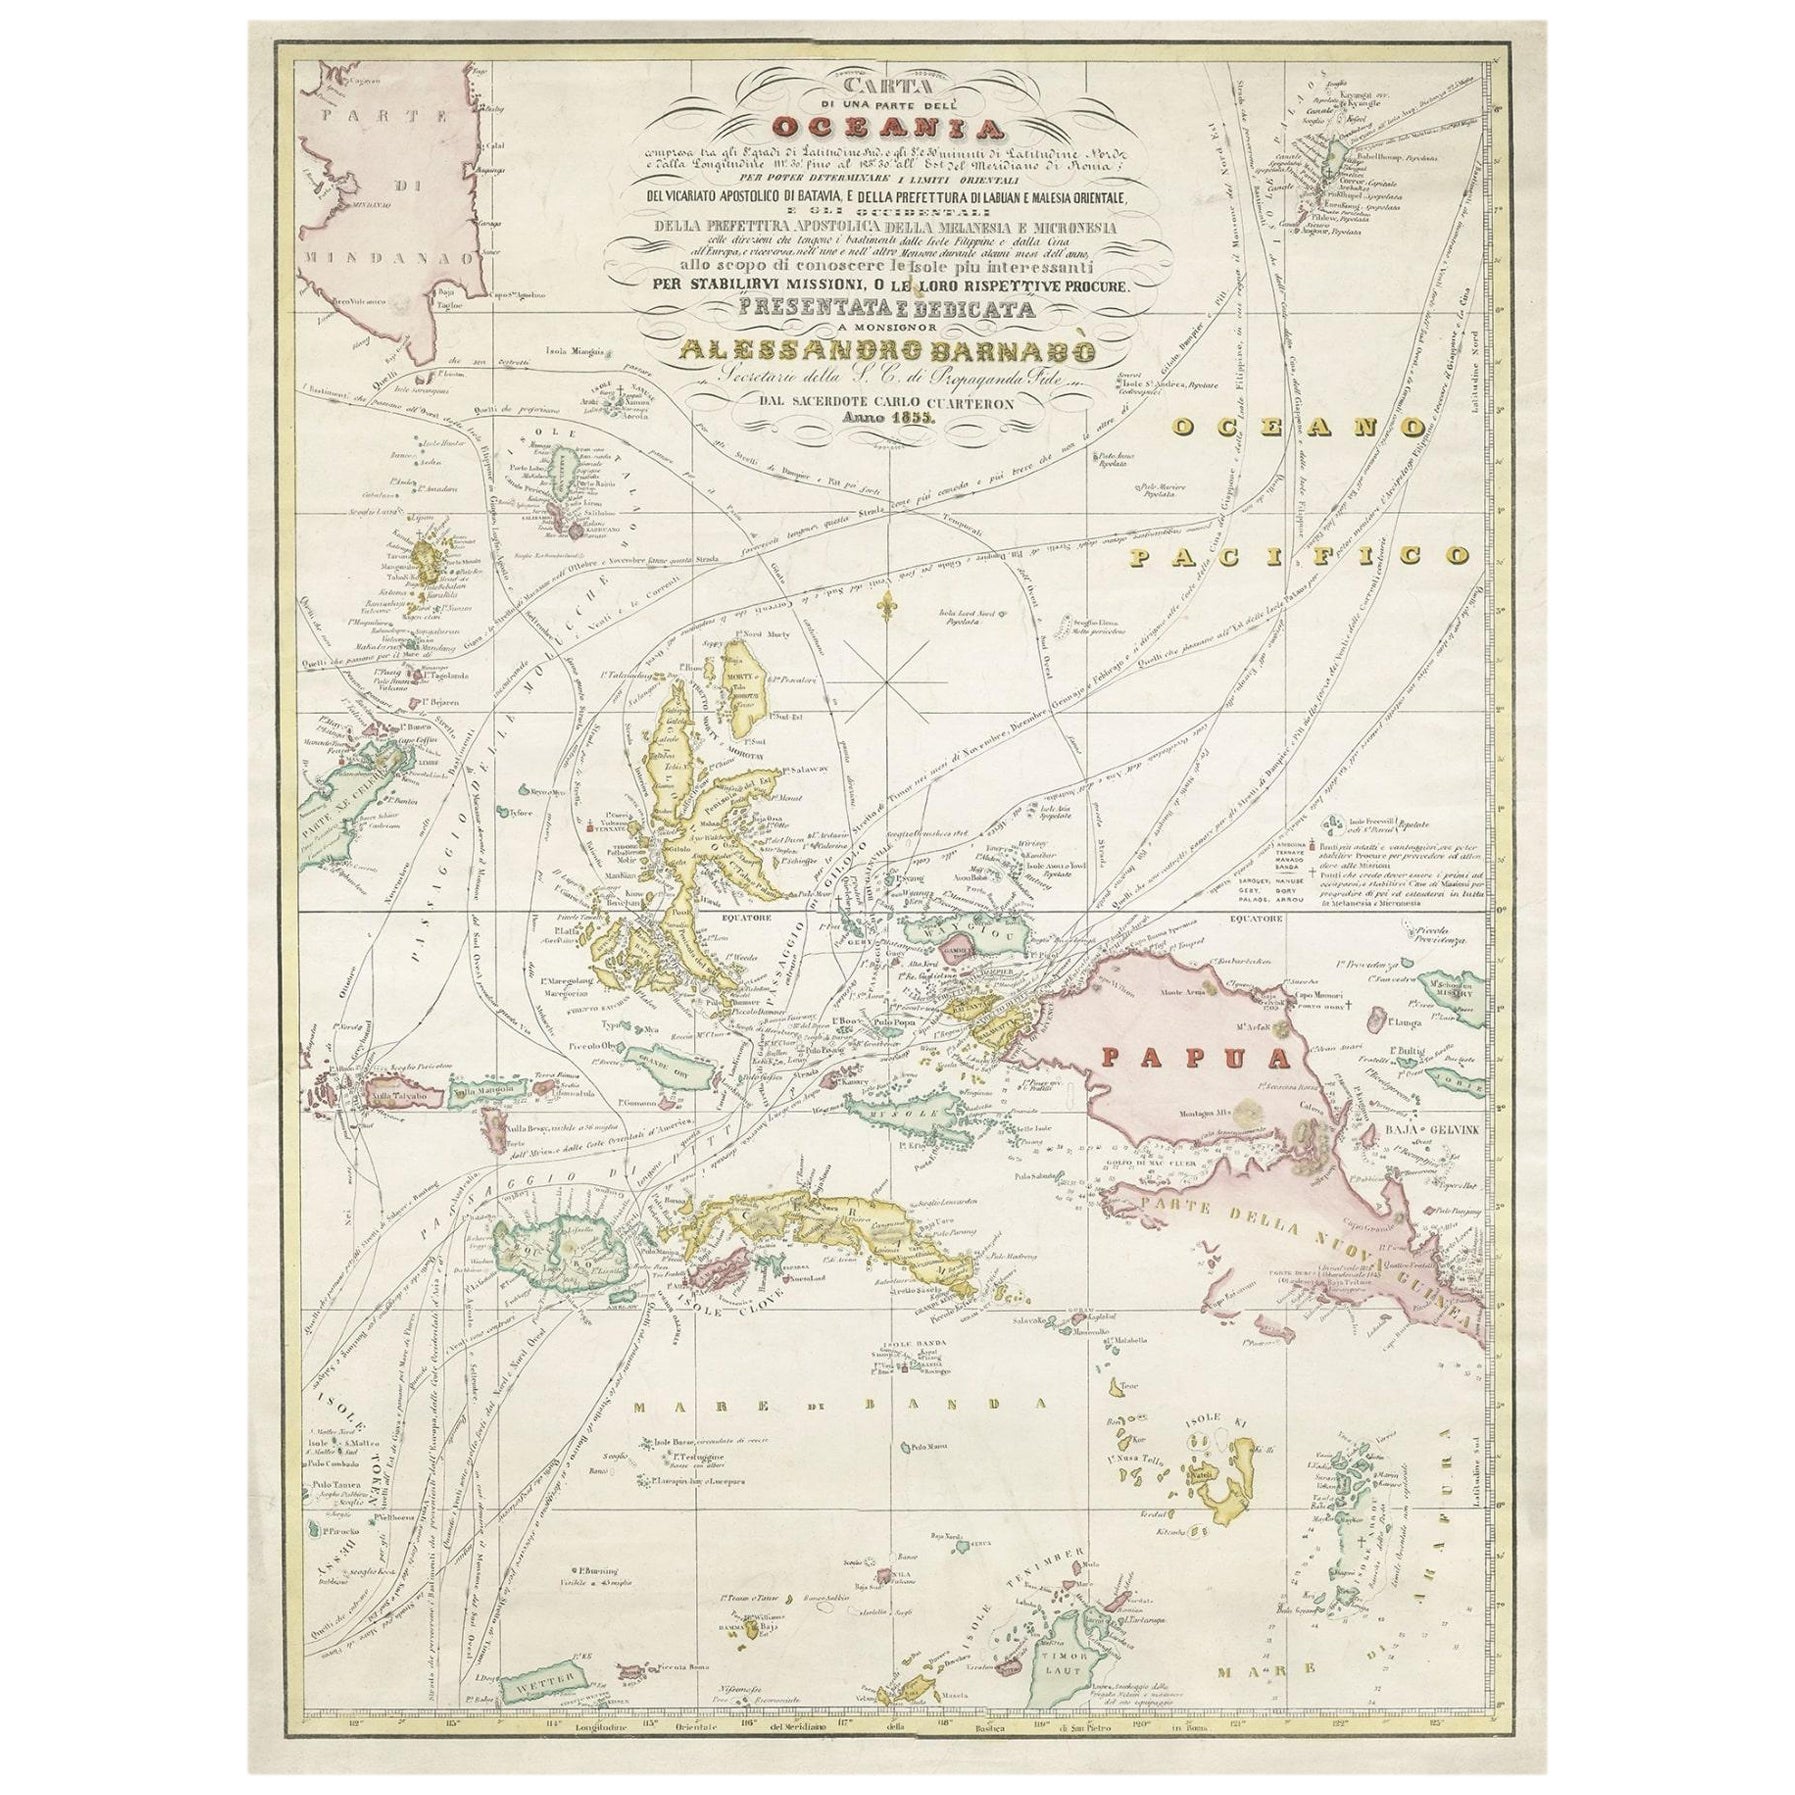 Grande carte italienne des îles de l'Océanie océanique, incluant Papouasie, Timor, Banda, Ceram, 1855